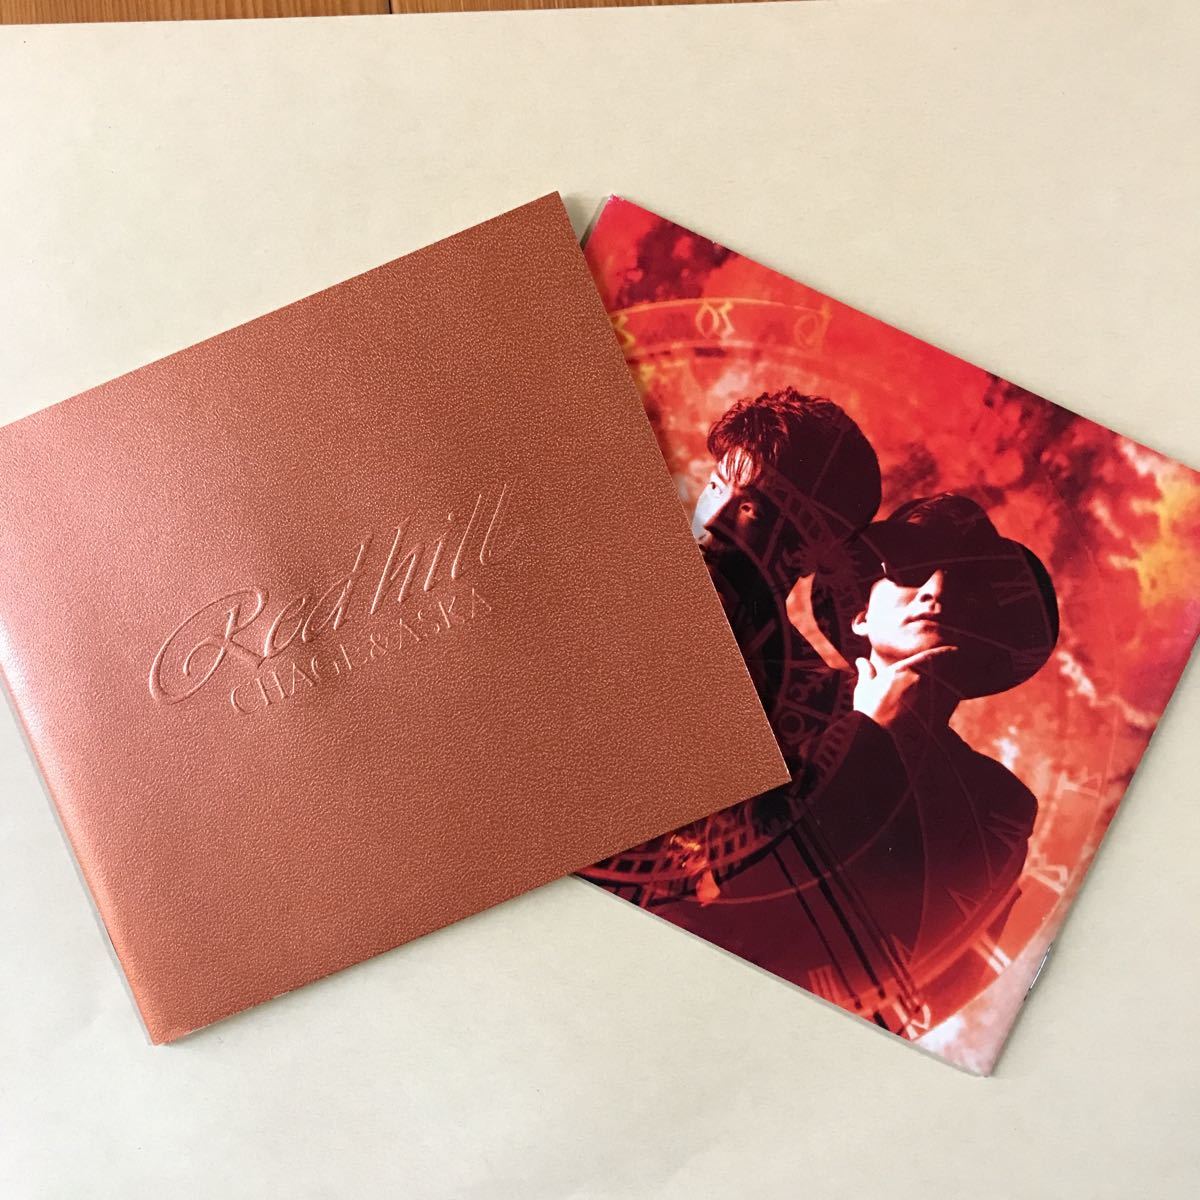 ヤフオク! - CHAGEASKA 1CD「RED HILL」写真集付き